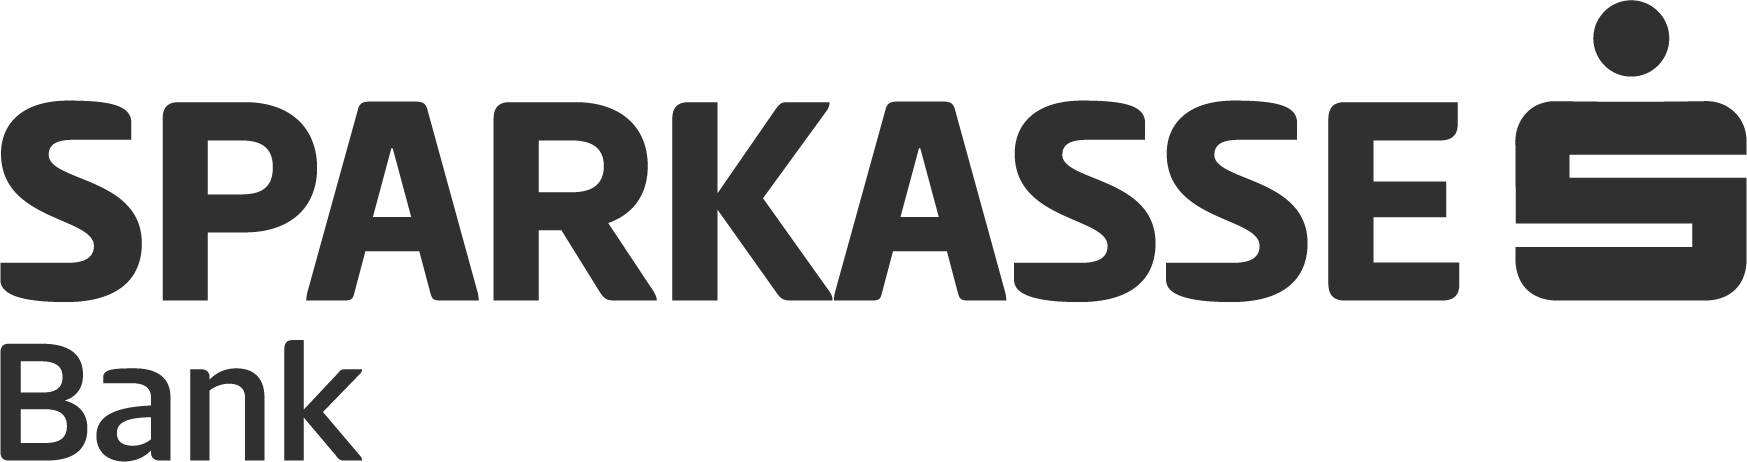 Sparkasse Bank logo